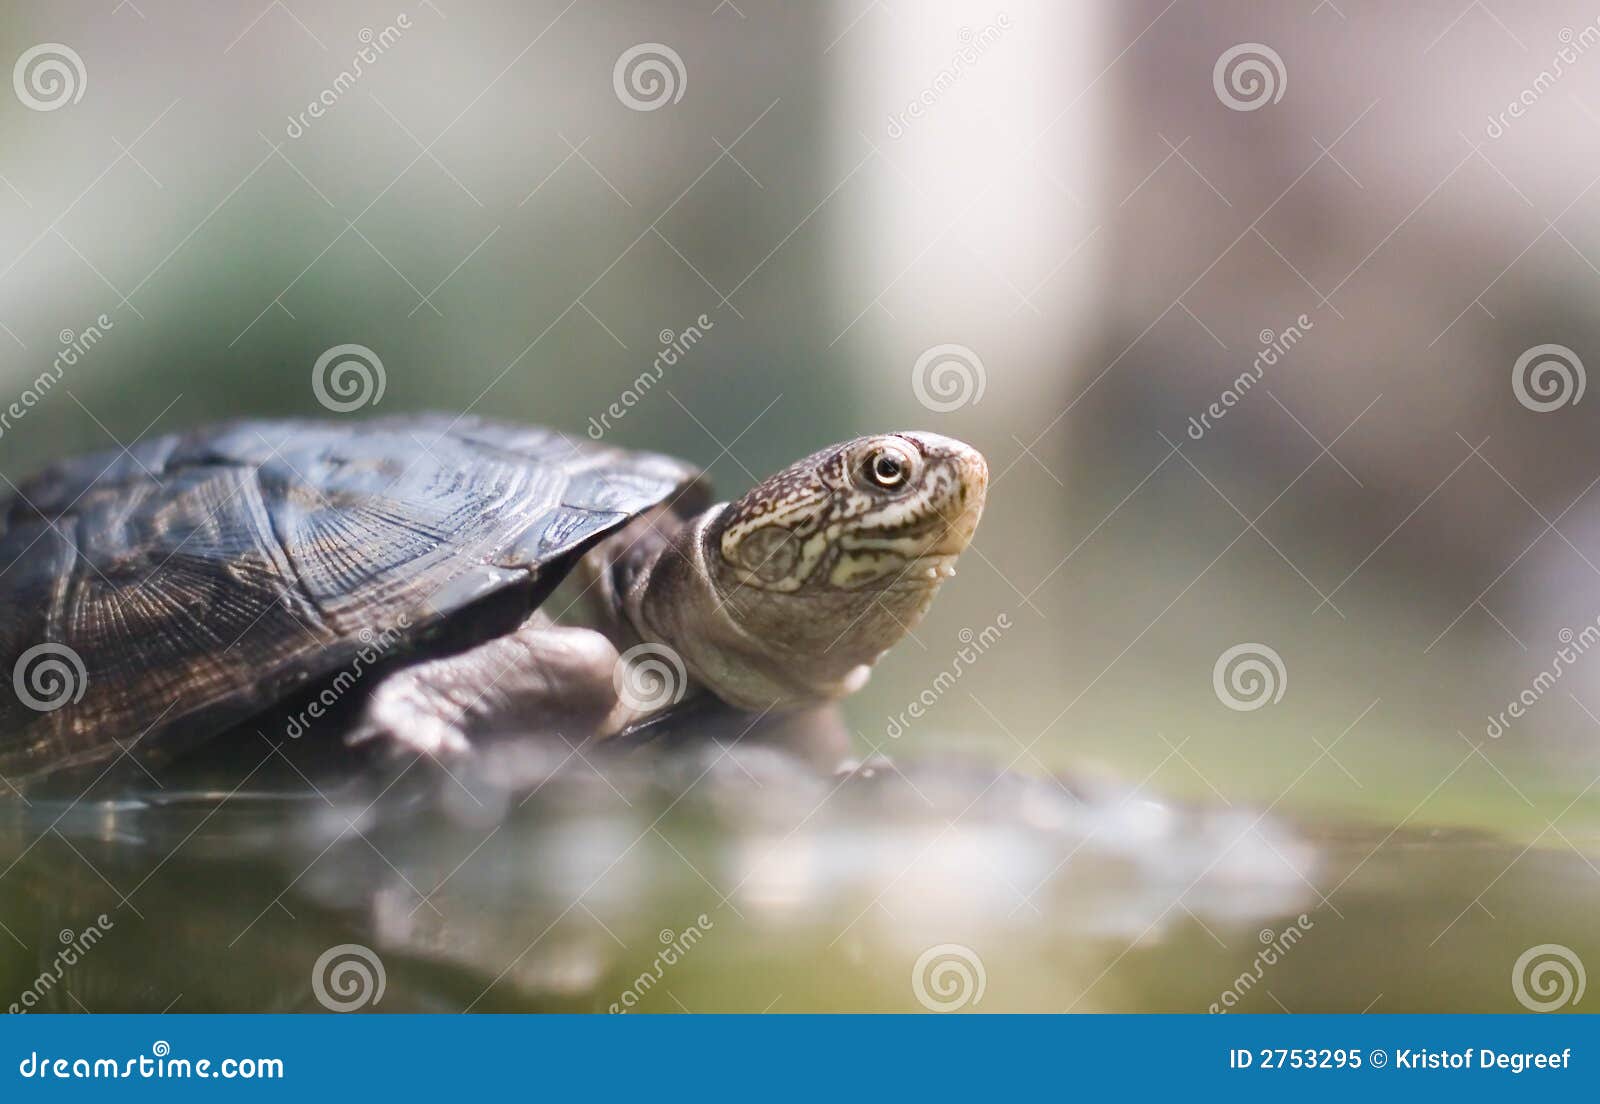 అదృష్టాన్ని తెచ్చిపెట్టే 20 గోర్లు నాటు తాబేలు || 20 nails Lucky turtle -  YouTube